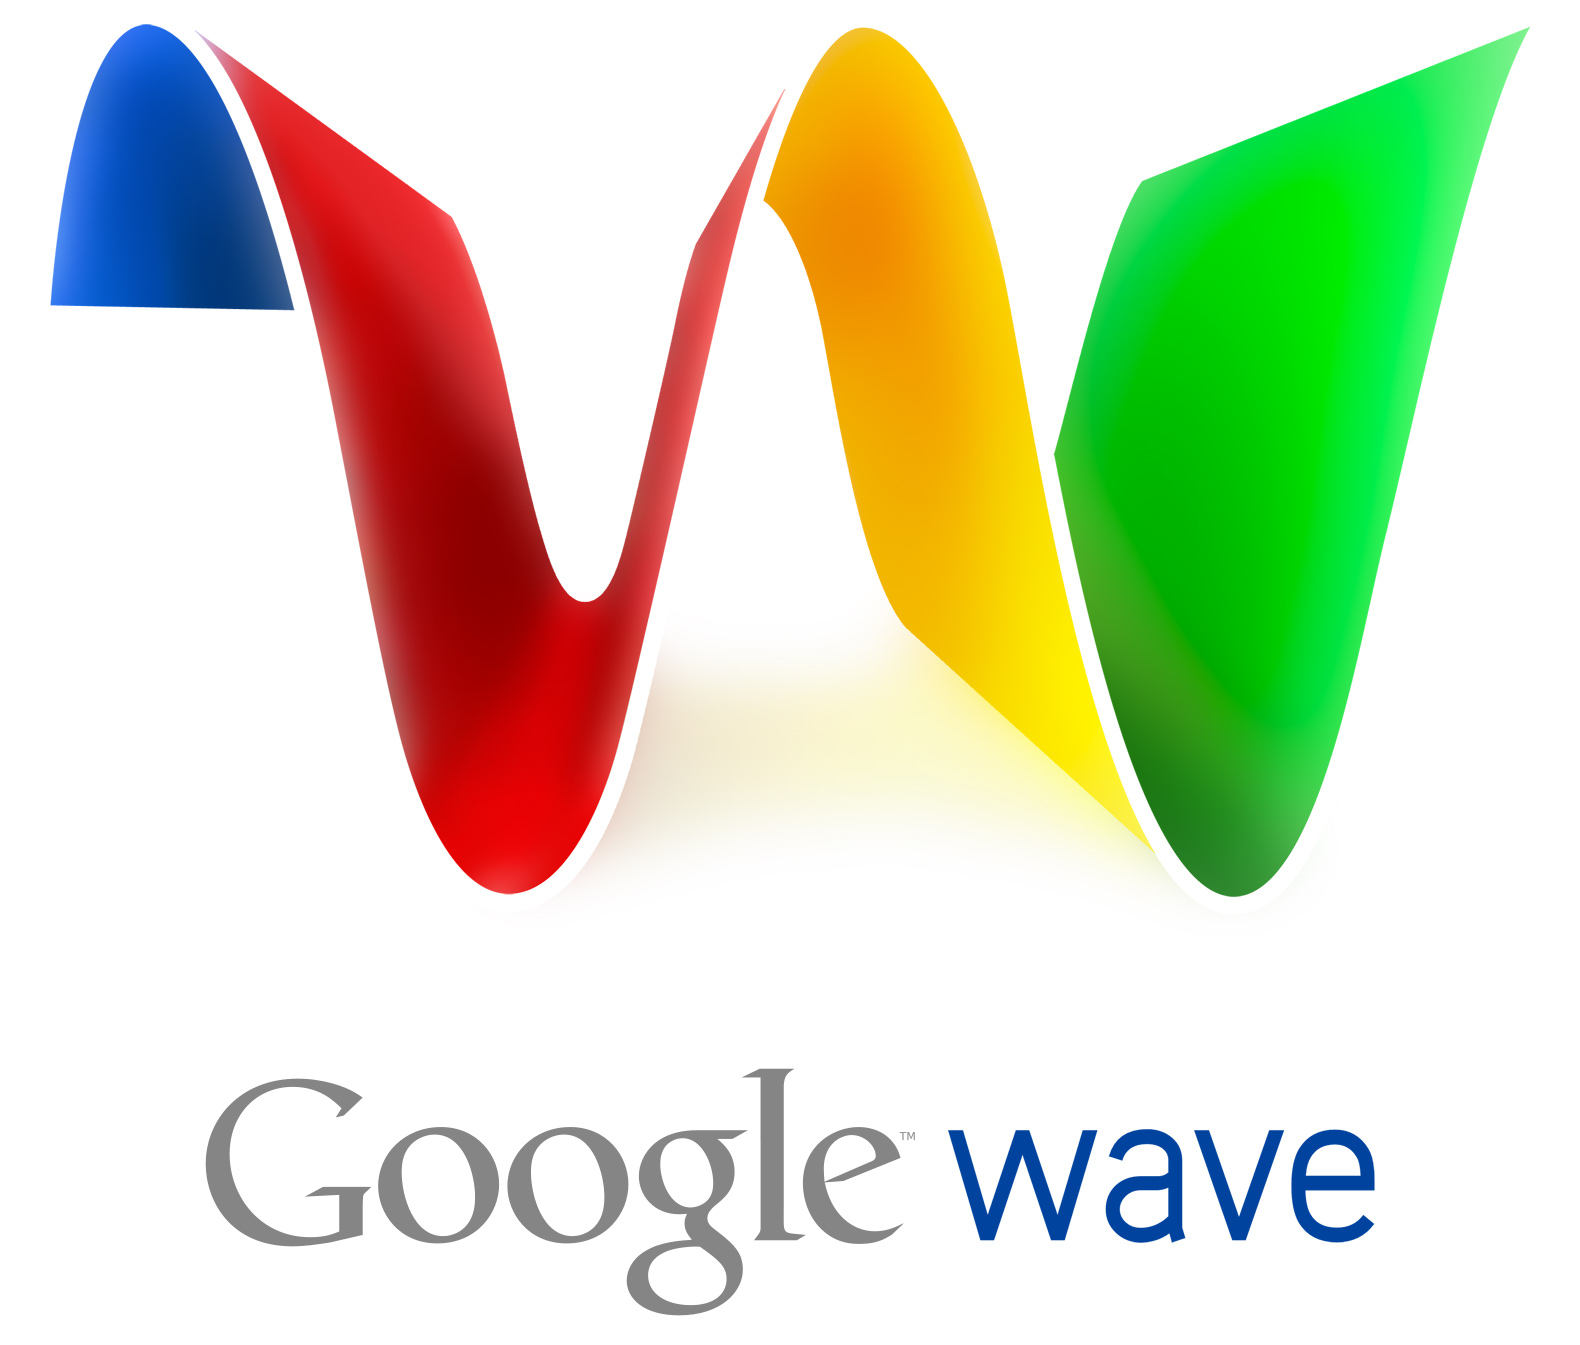 Google Wave, la nueva alternativa a Facebook del gigante de Internet